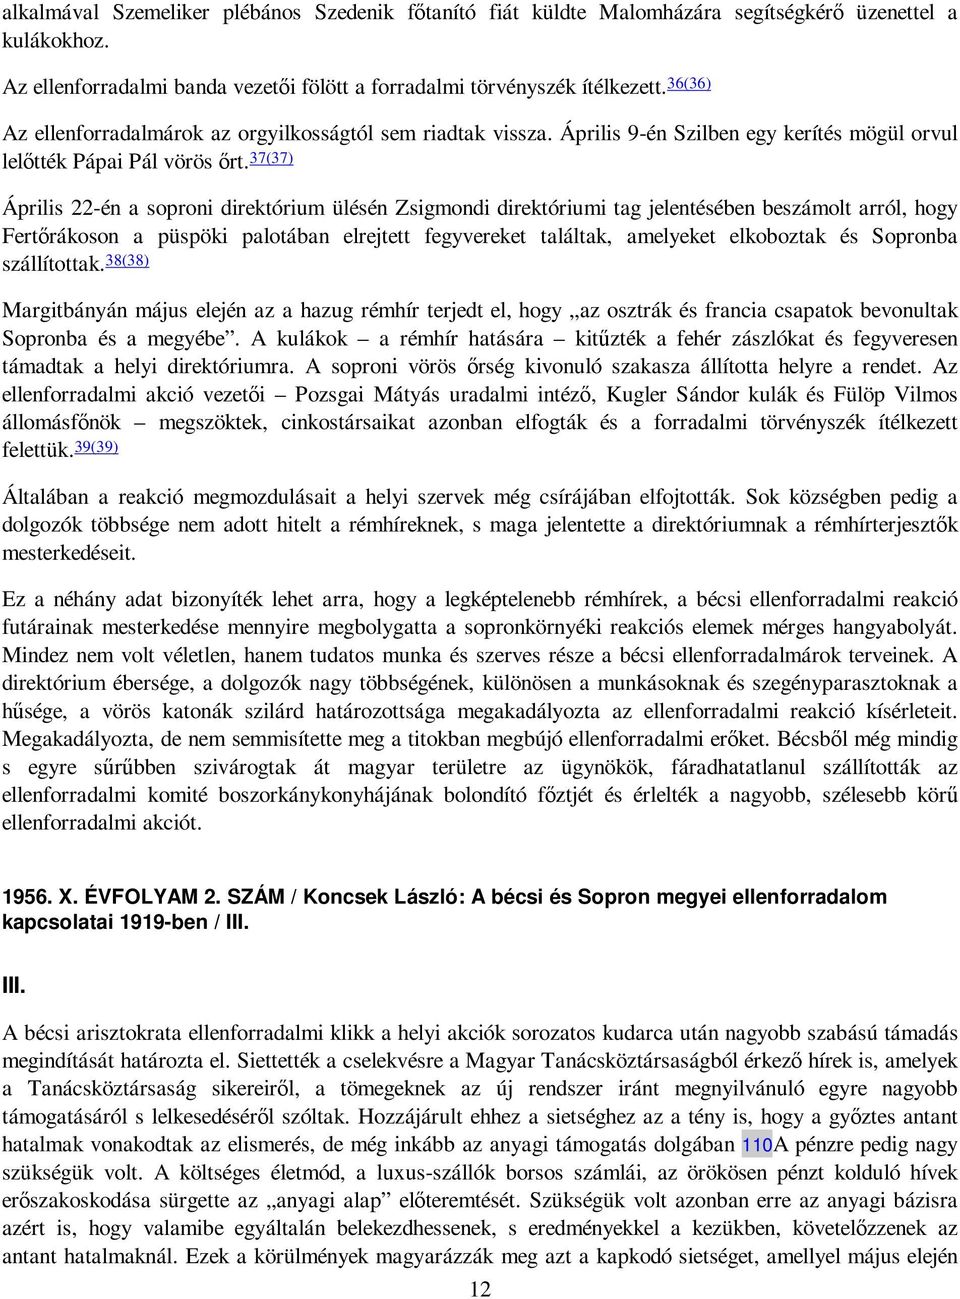 37(37) Április 22-én a soproni direktórium ülésén Zsigmondi direktóriumi tag jelentésében beszámolt arról, hogy Fertırákoson a püspöki palotában elrejtett fegyvereket találtak, amelyeket elkoboztak